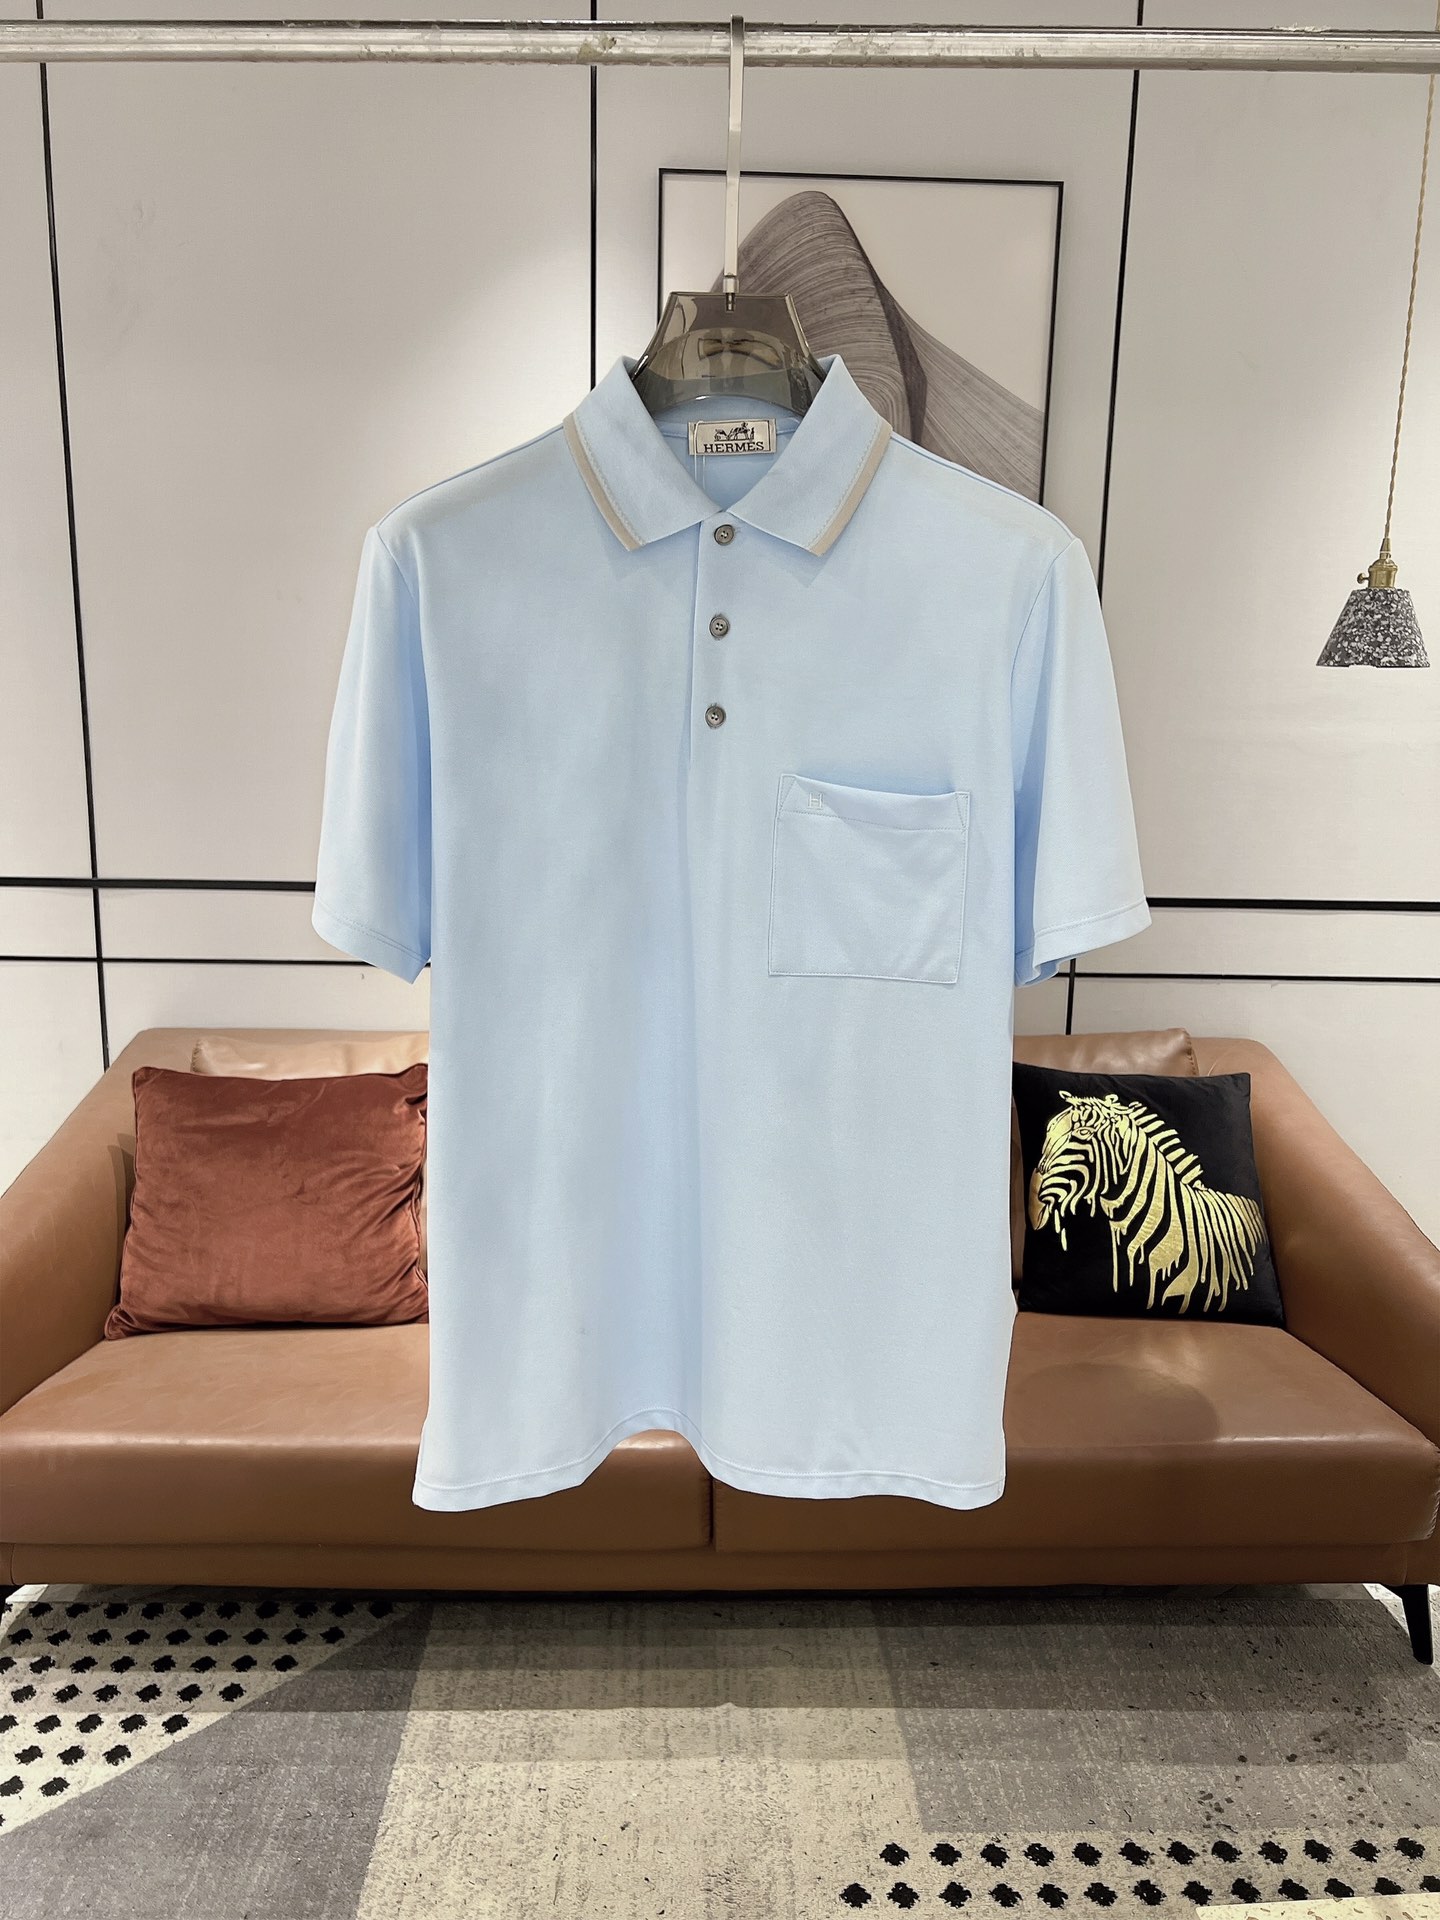 Hermes Vêtements T-Shirt Bleu profond Gris ciel Blanc Broderie de fleurs Hommes Coton Collection printemps – été Fashion Manches courtes